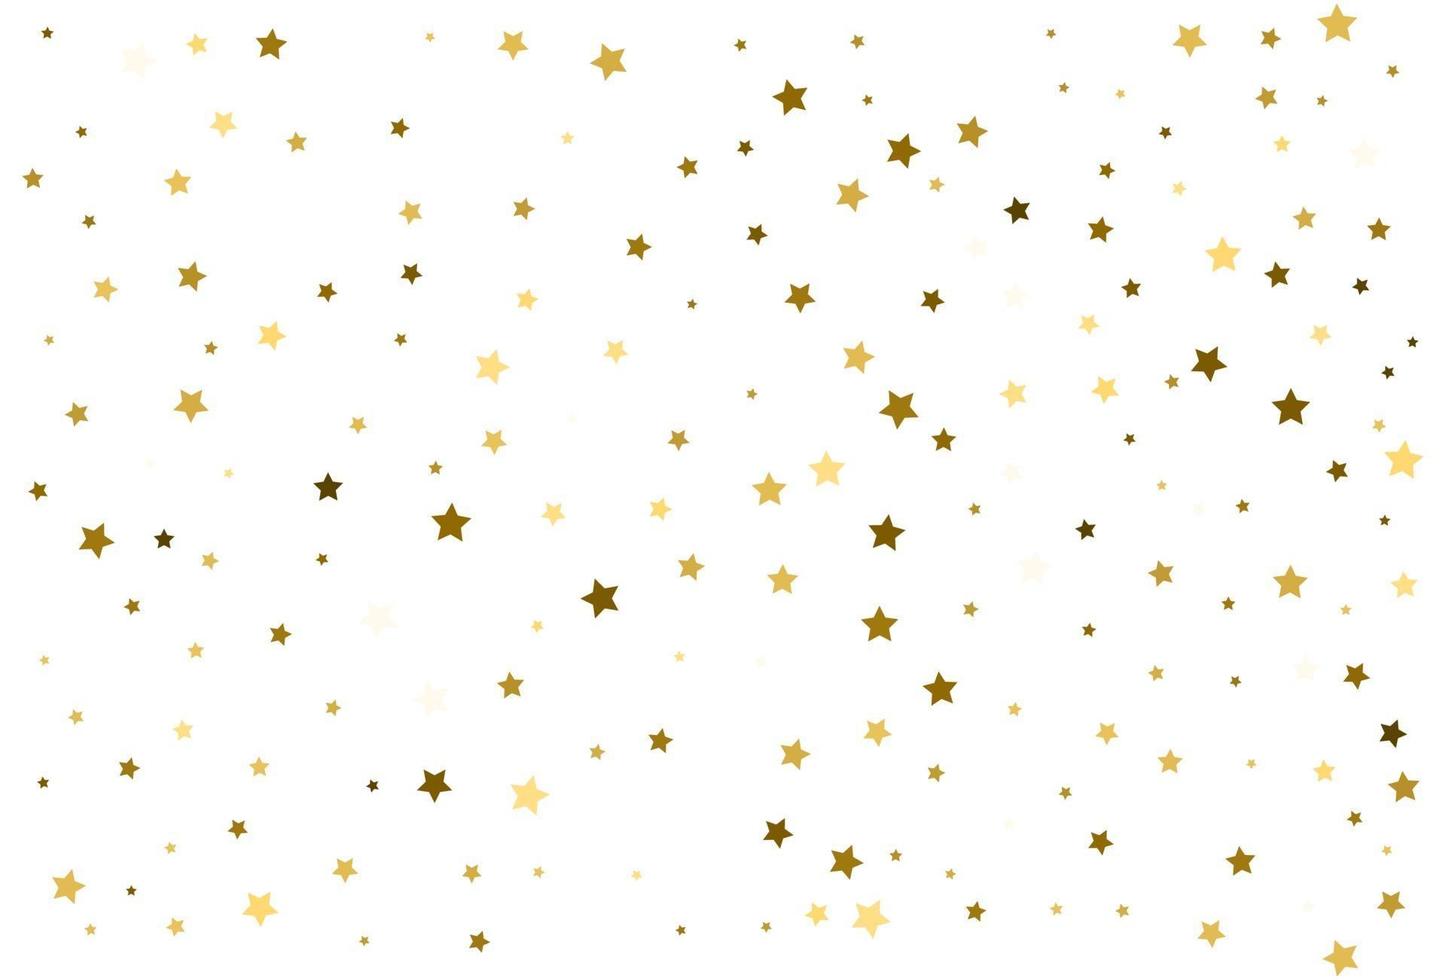 caída de estrellas de oro celebración de confeti dorado decoración navideña vector